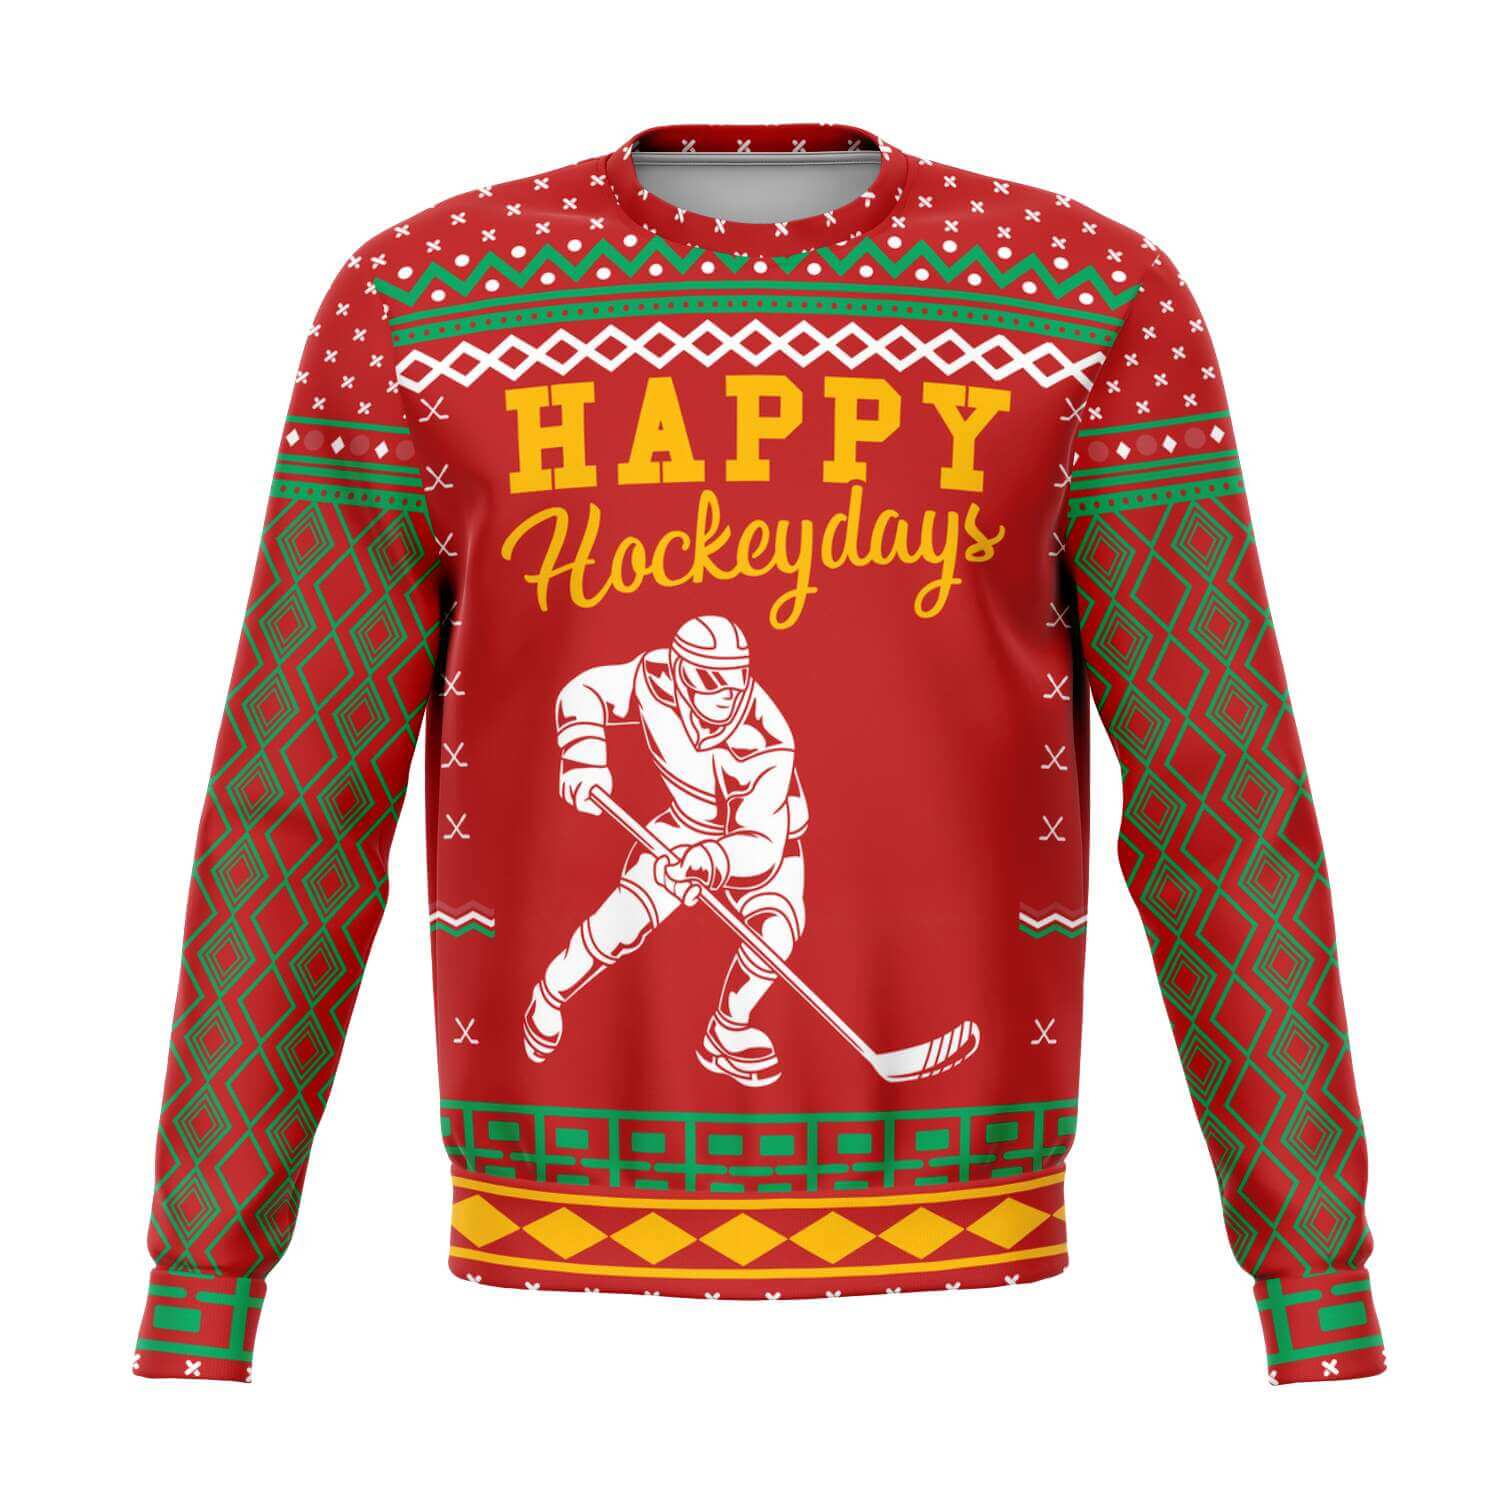 Happy-Hockeydays-Athletic-Fashion-sweatshirt